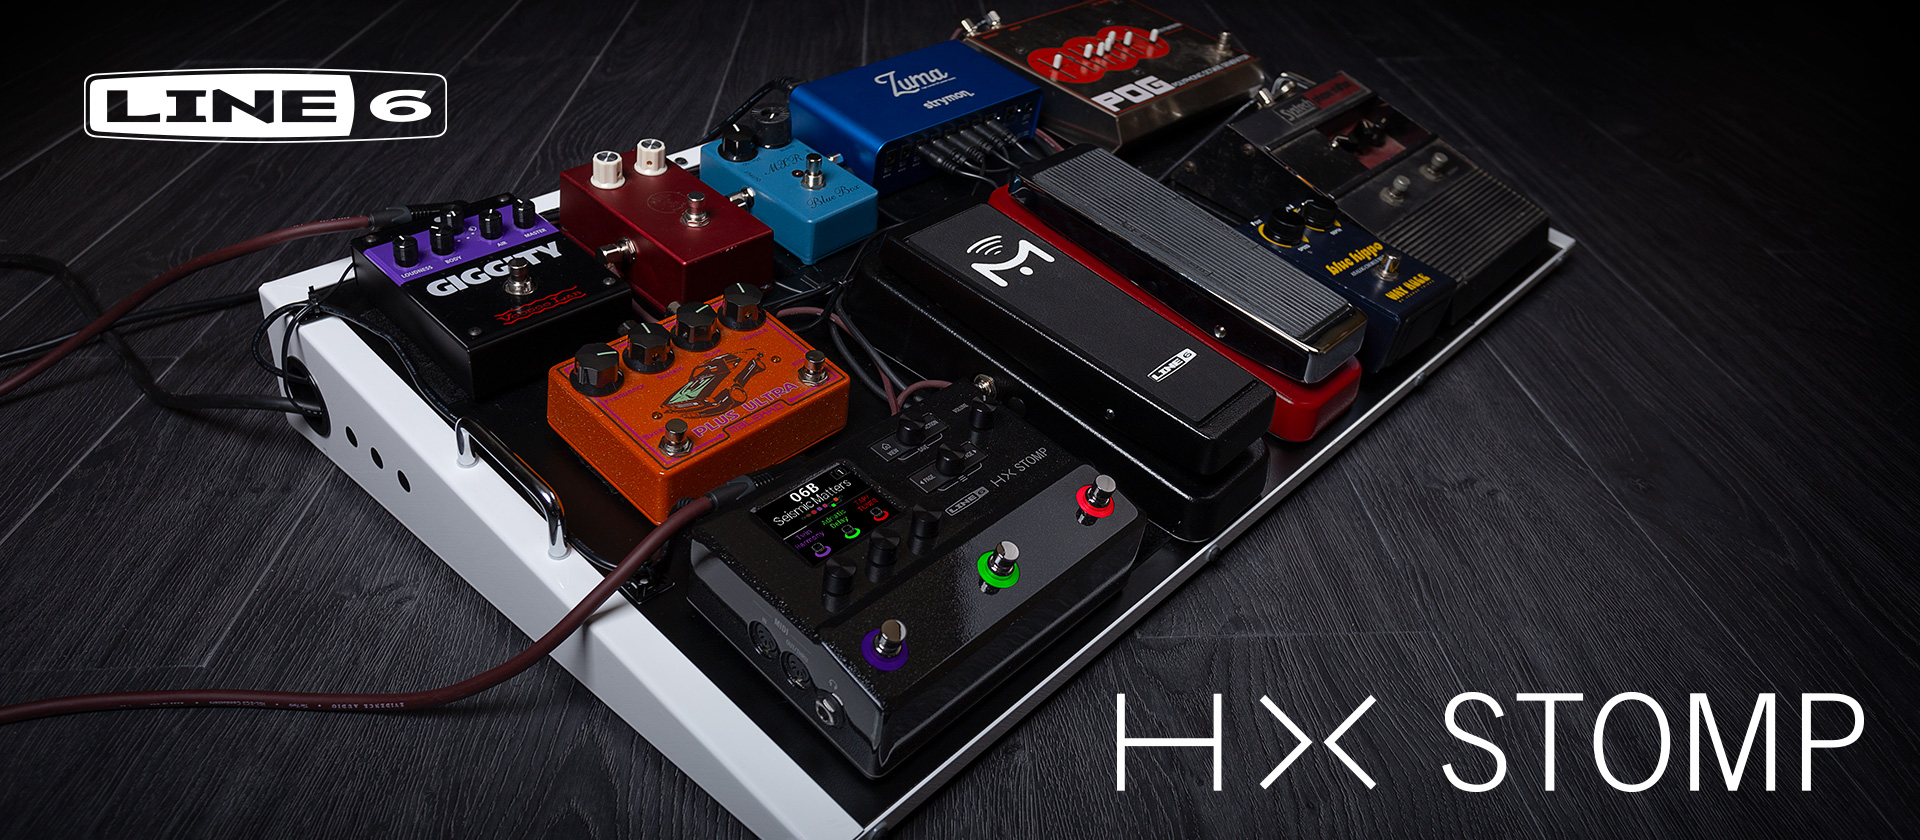 HX Stomp - новый компактный процессор из серии Helix 